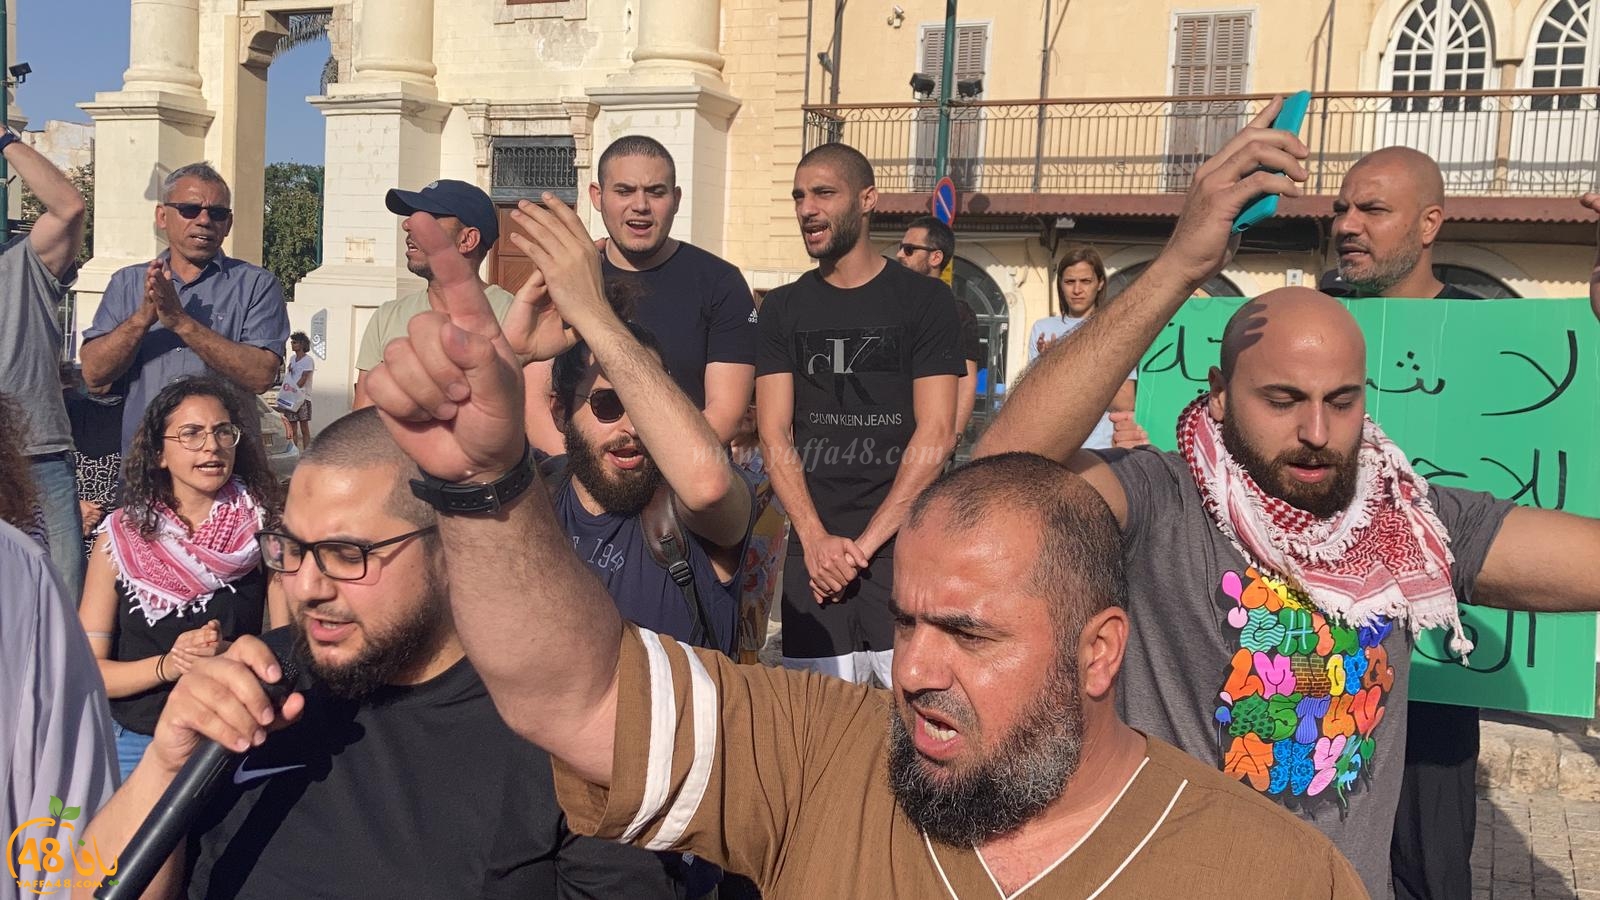  فيديو: وقفة احتجاجية في دوار الساعة بيافا نُصرةً للأقصى المبارك 